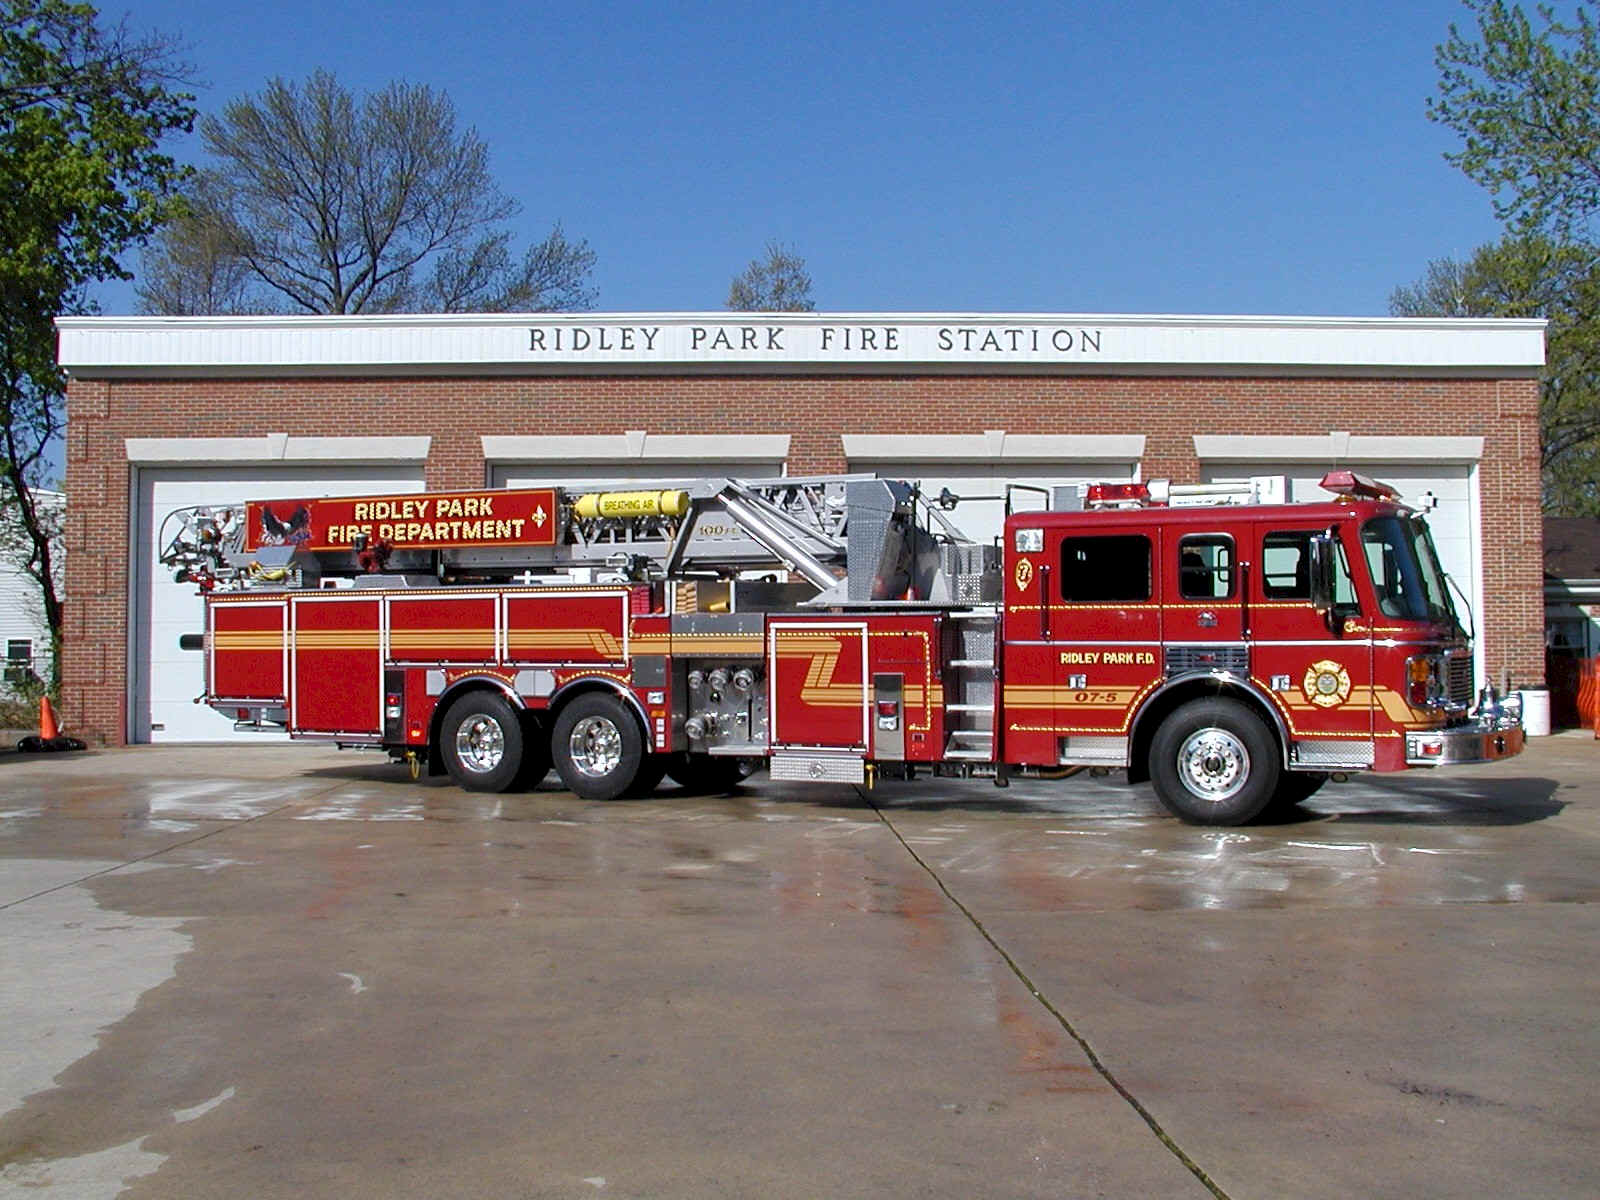 Пожарные лс. Ladder пожарные машины США. Пожарная автоцистерна Америки. Машина "Fire Truck" пожарная, 49450. Пожарная машина американская сбоку.